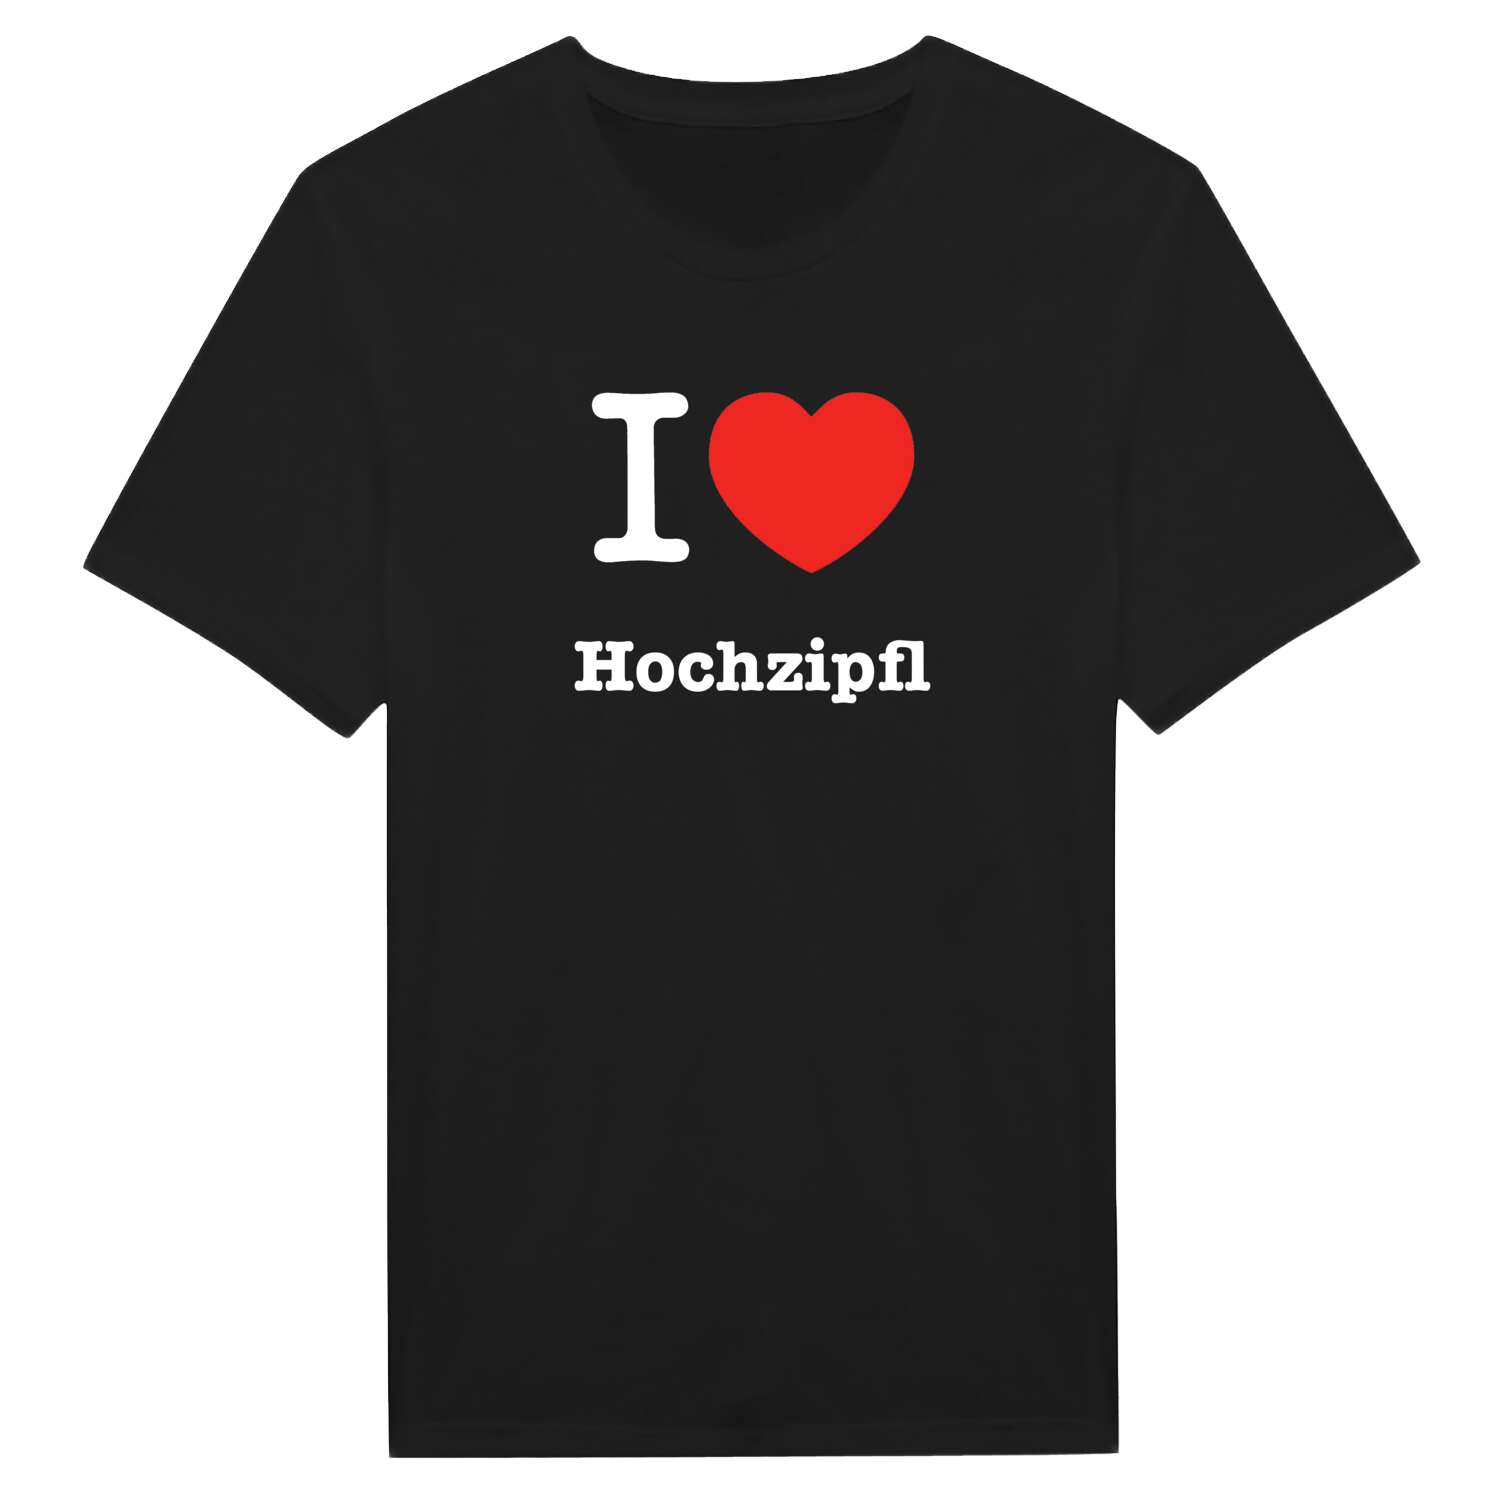 Hochzipfl T-Shirt »I love«